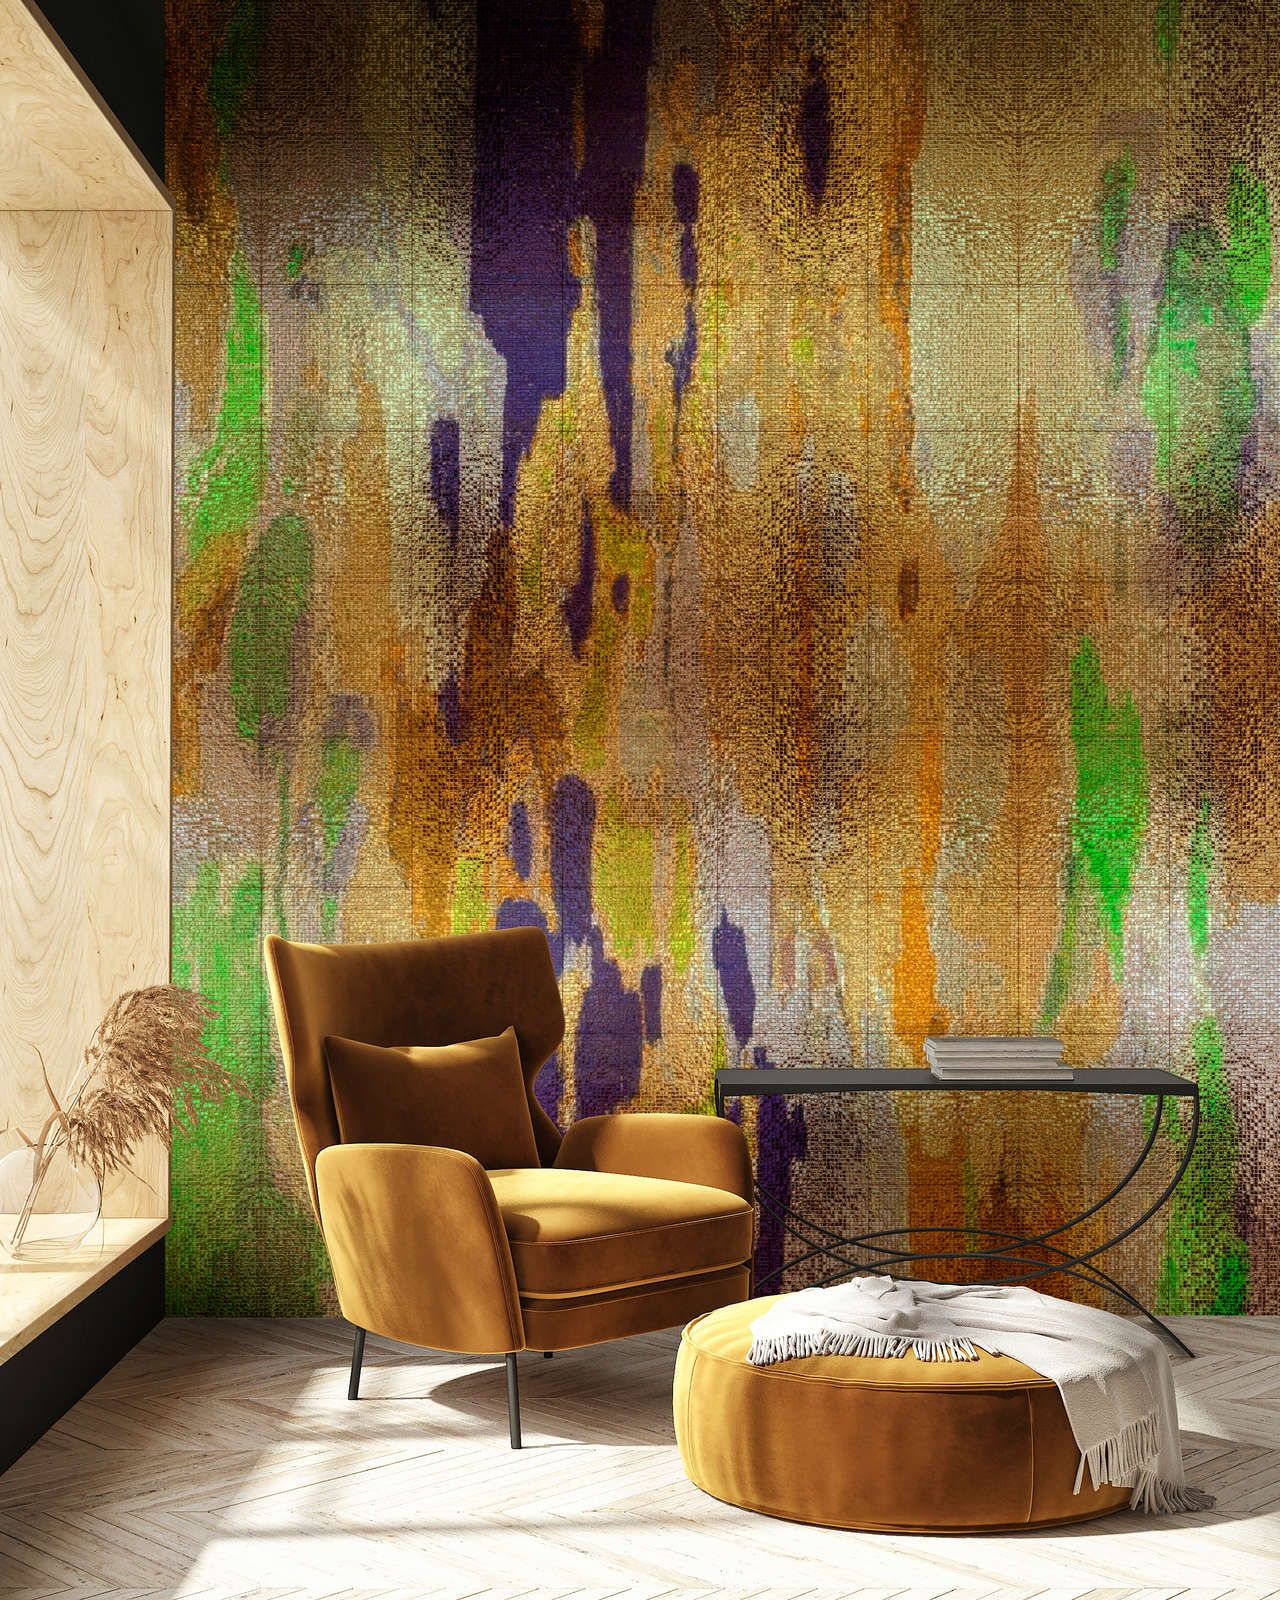             Fotomural »marielle 1«< - Degradados de color violeta, dorado, verde con estructura de mosaico - Tela no tejida lisa, ligeramente nacarada y brillante
        